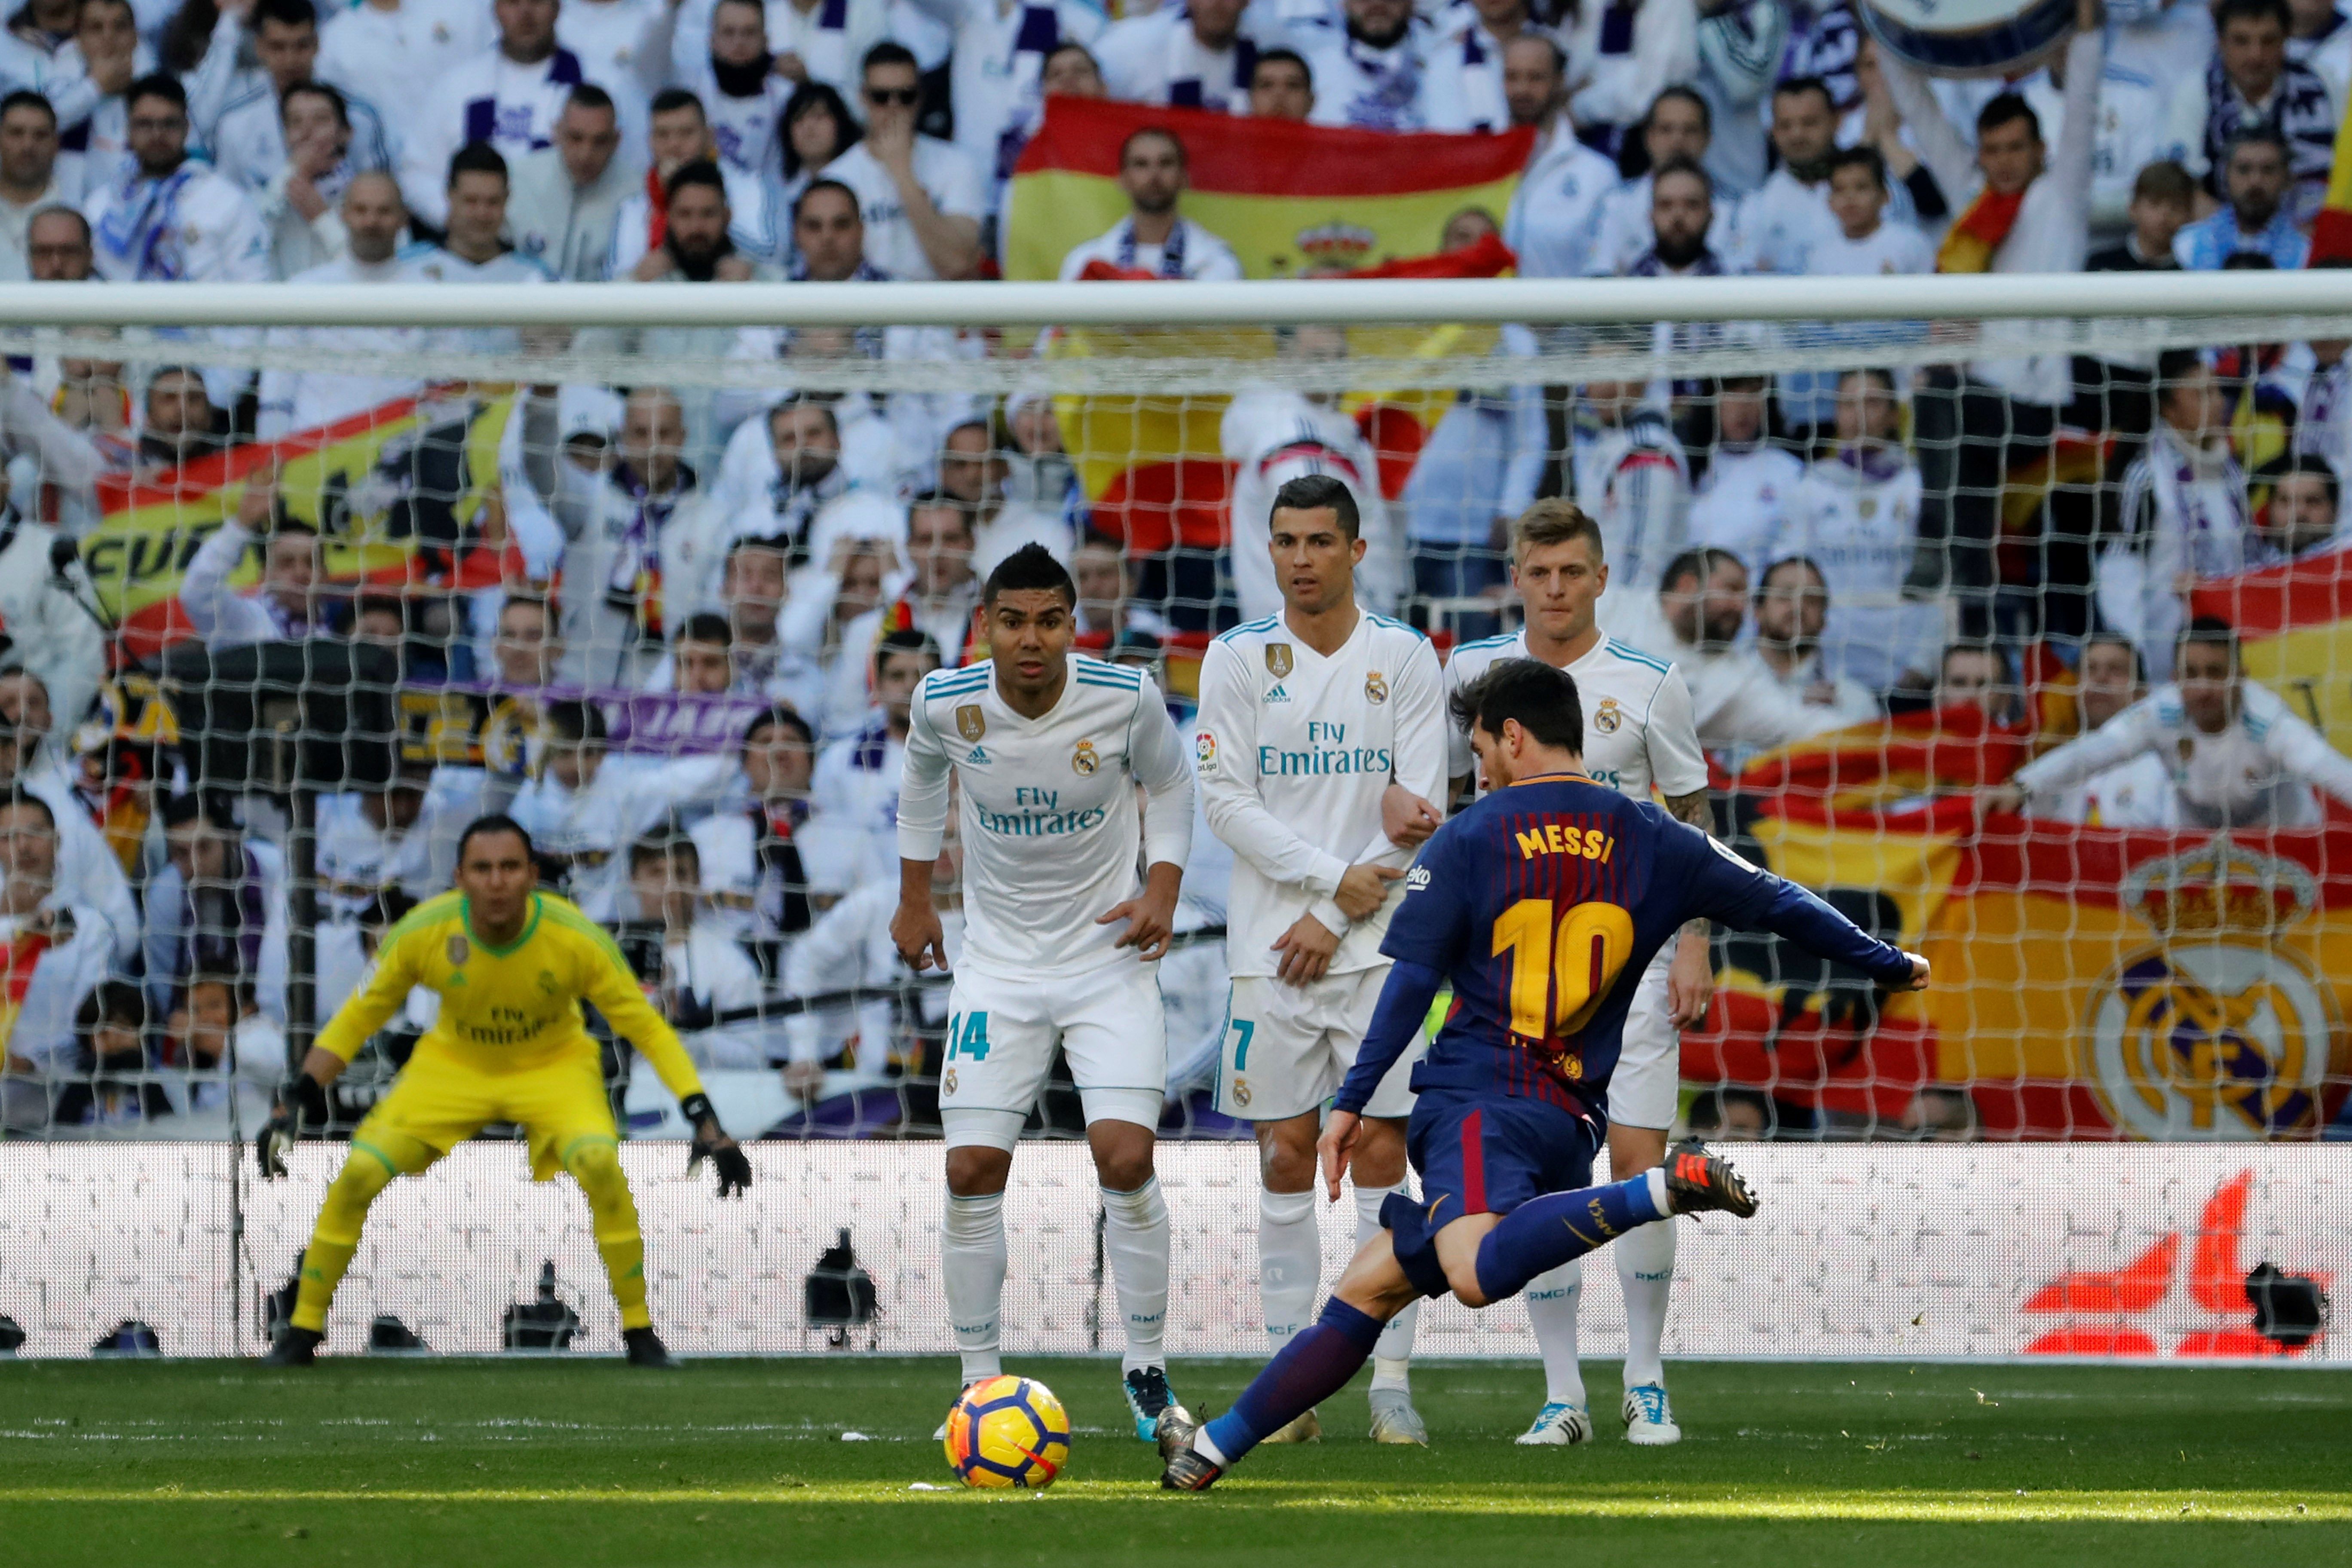 El Madrid hizo una oferta de 250 millones por Messi, según 'Spiegel'